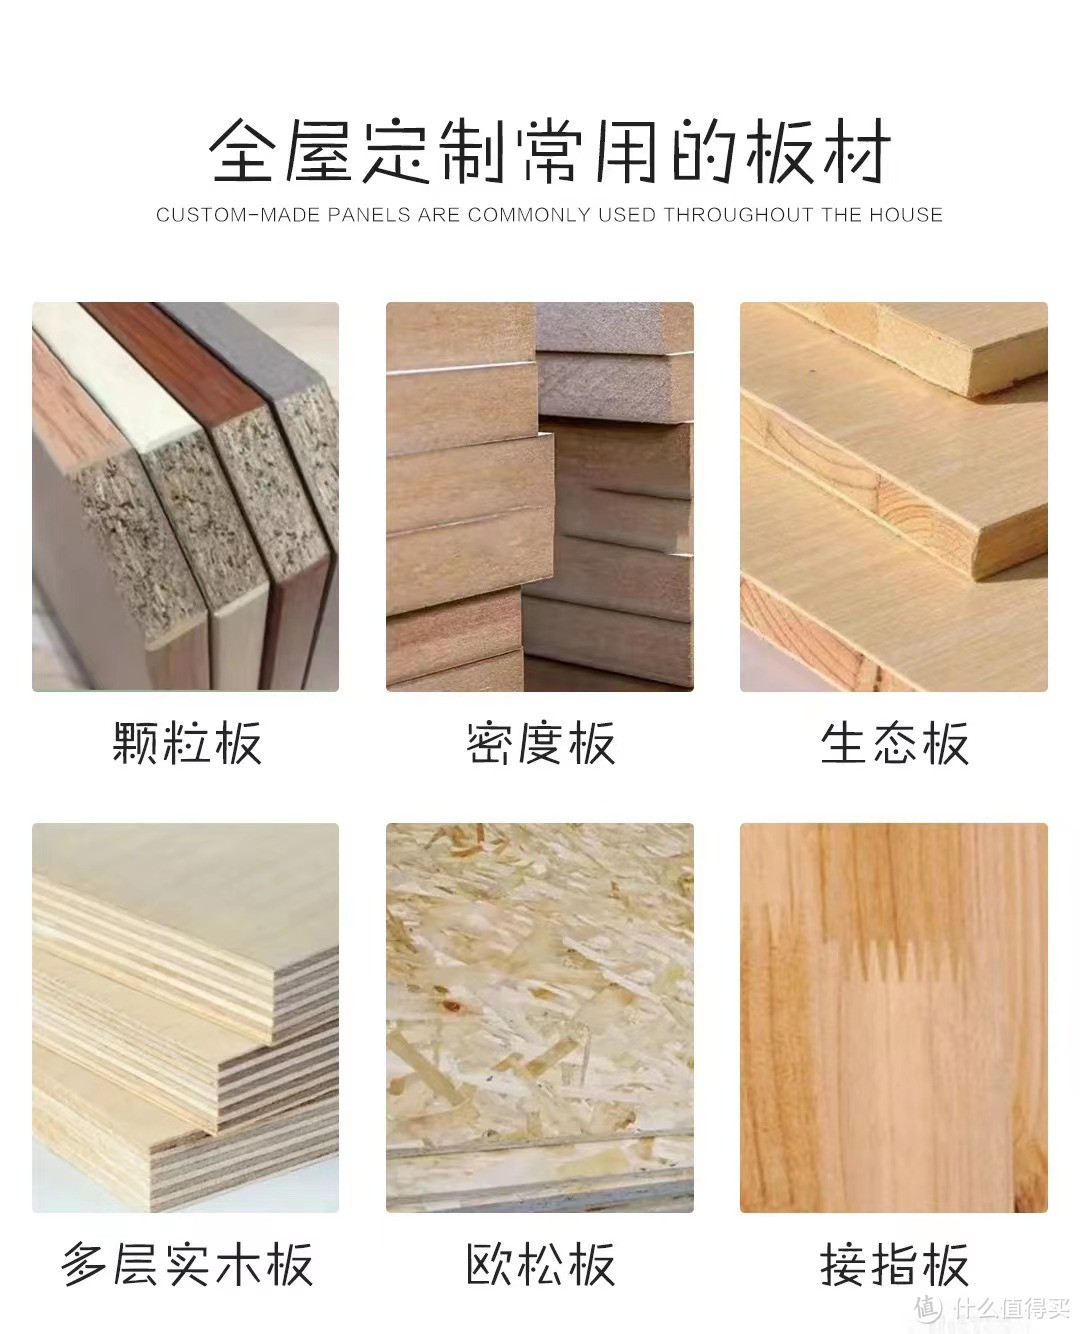 武汉网友：到底是选择1250的索菲亚康纯板还是1500的代工小厂生态板衣柜？